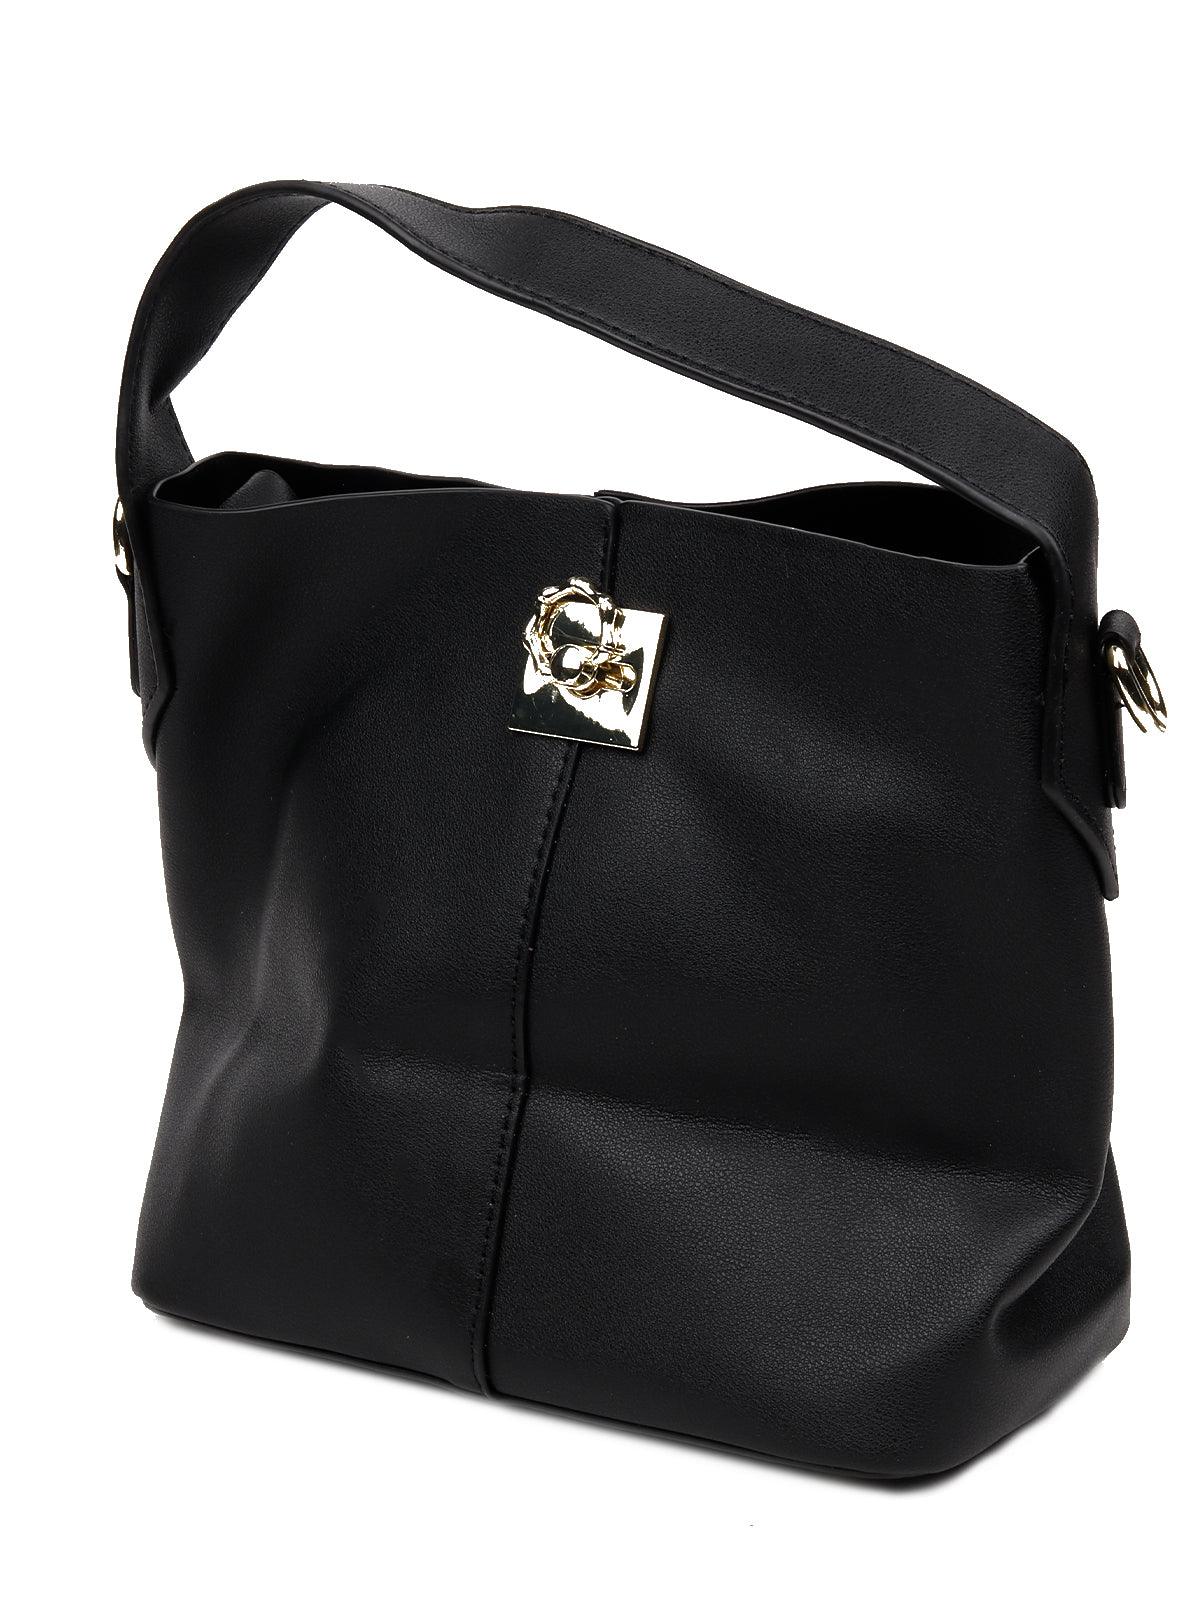 

Classic Black satchel bag with a detachable pouch